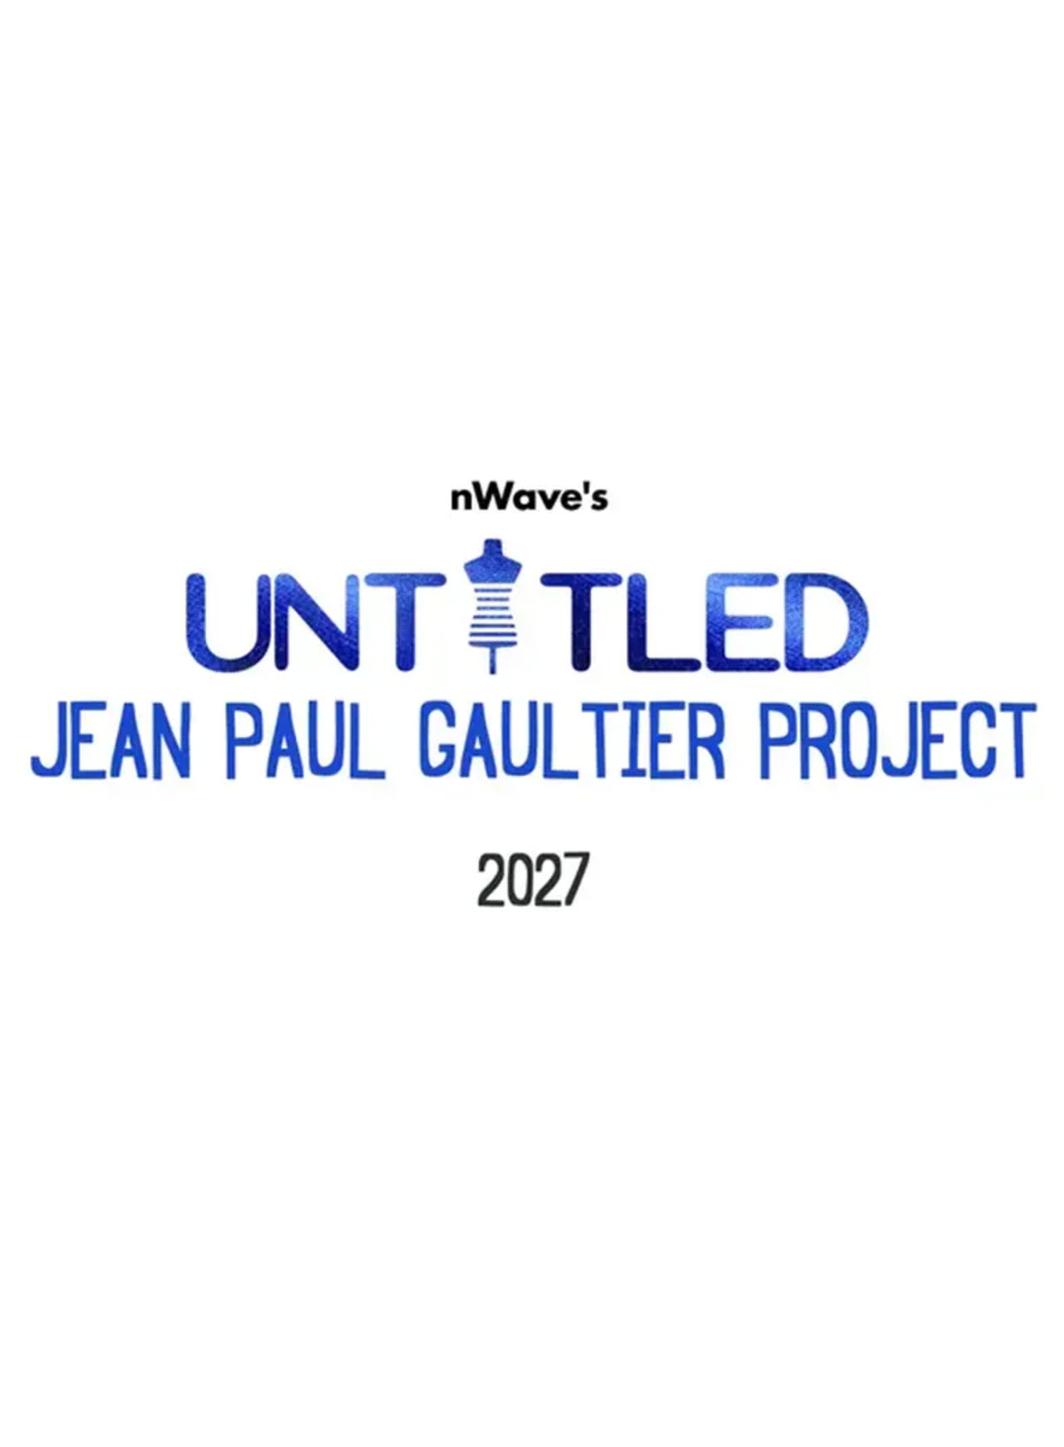 Jean Paul Gaultier va faire ses débuts au cinéma